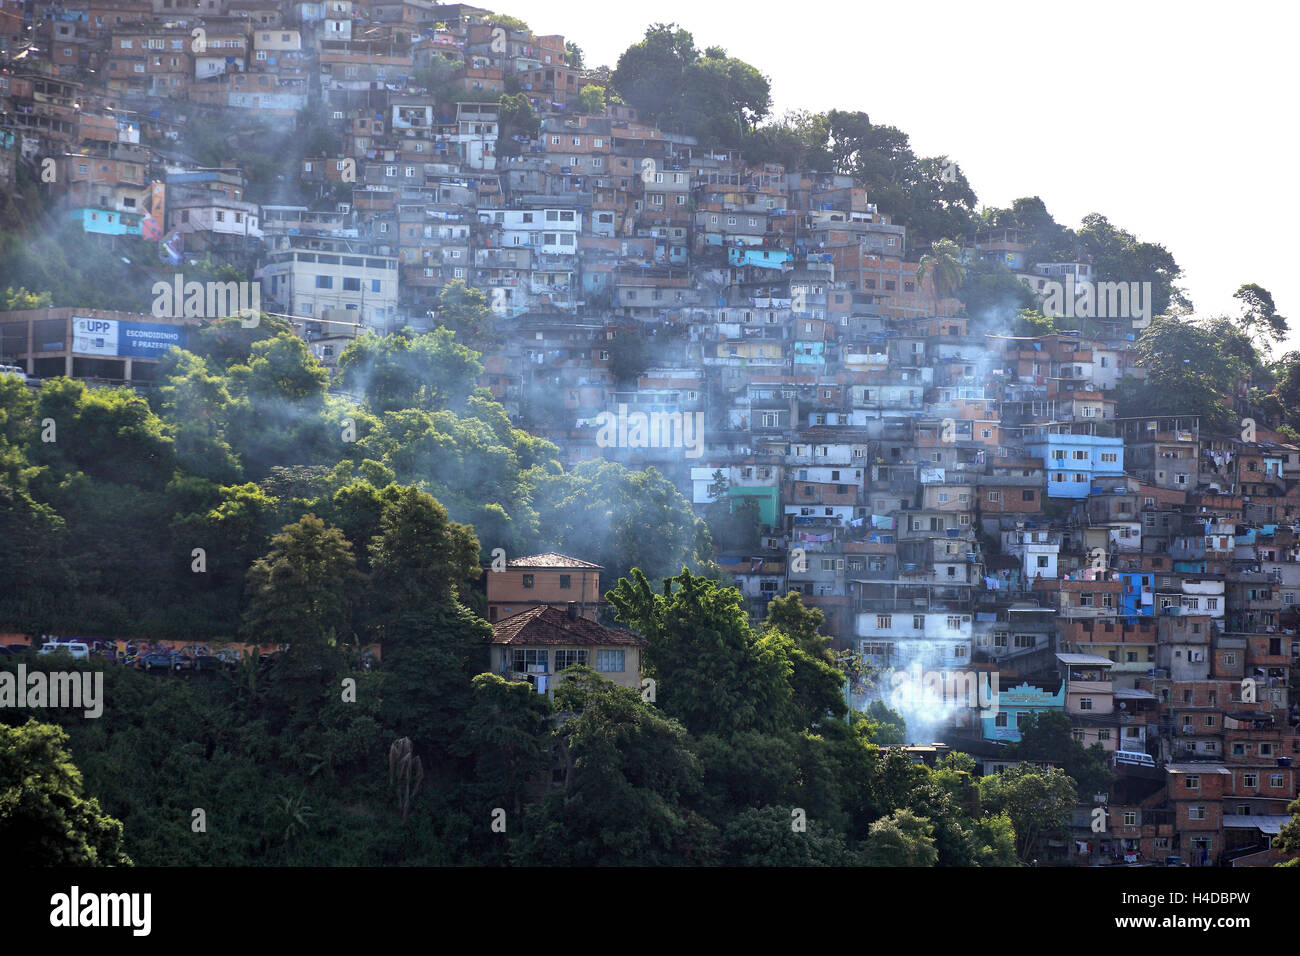 View at the Favelas between Santa Teresa and Centro, Rio de Janeiro, Brazil Stock Photo